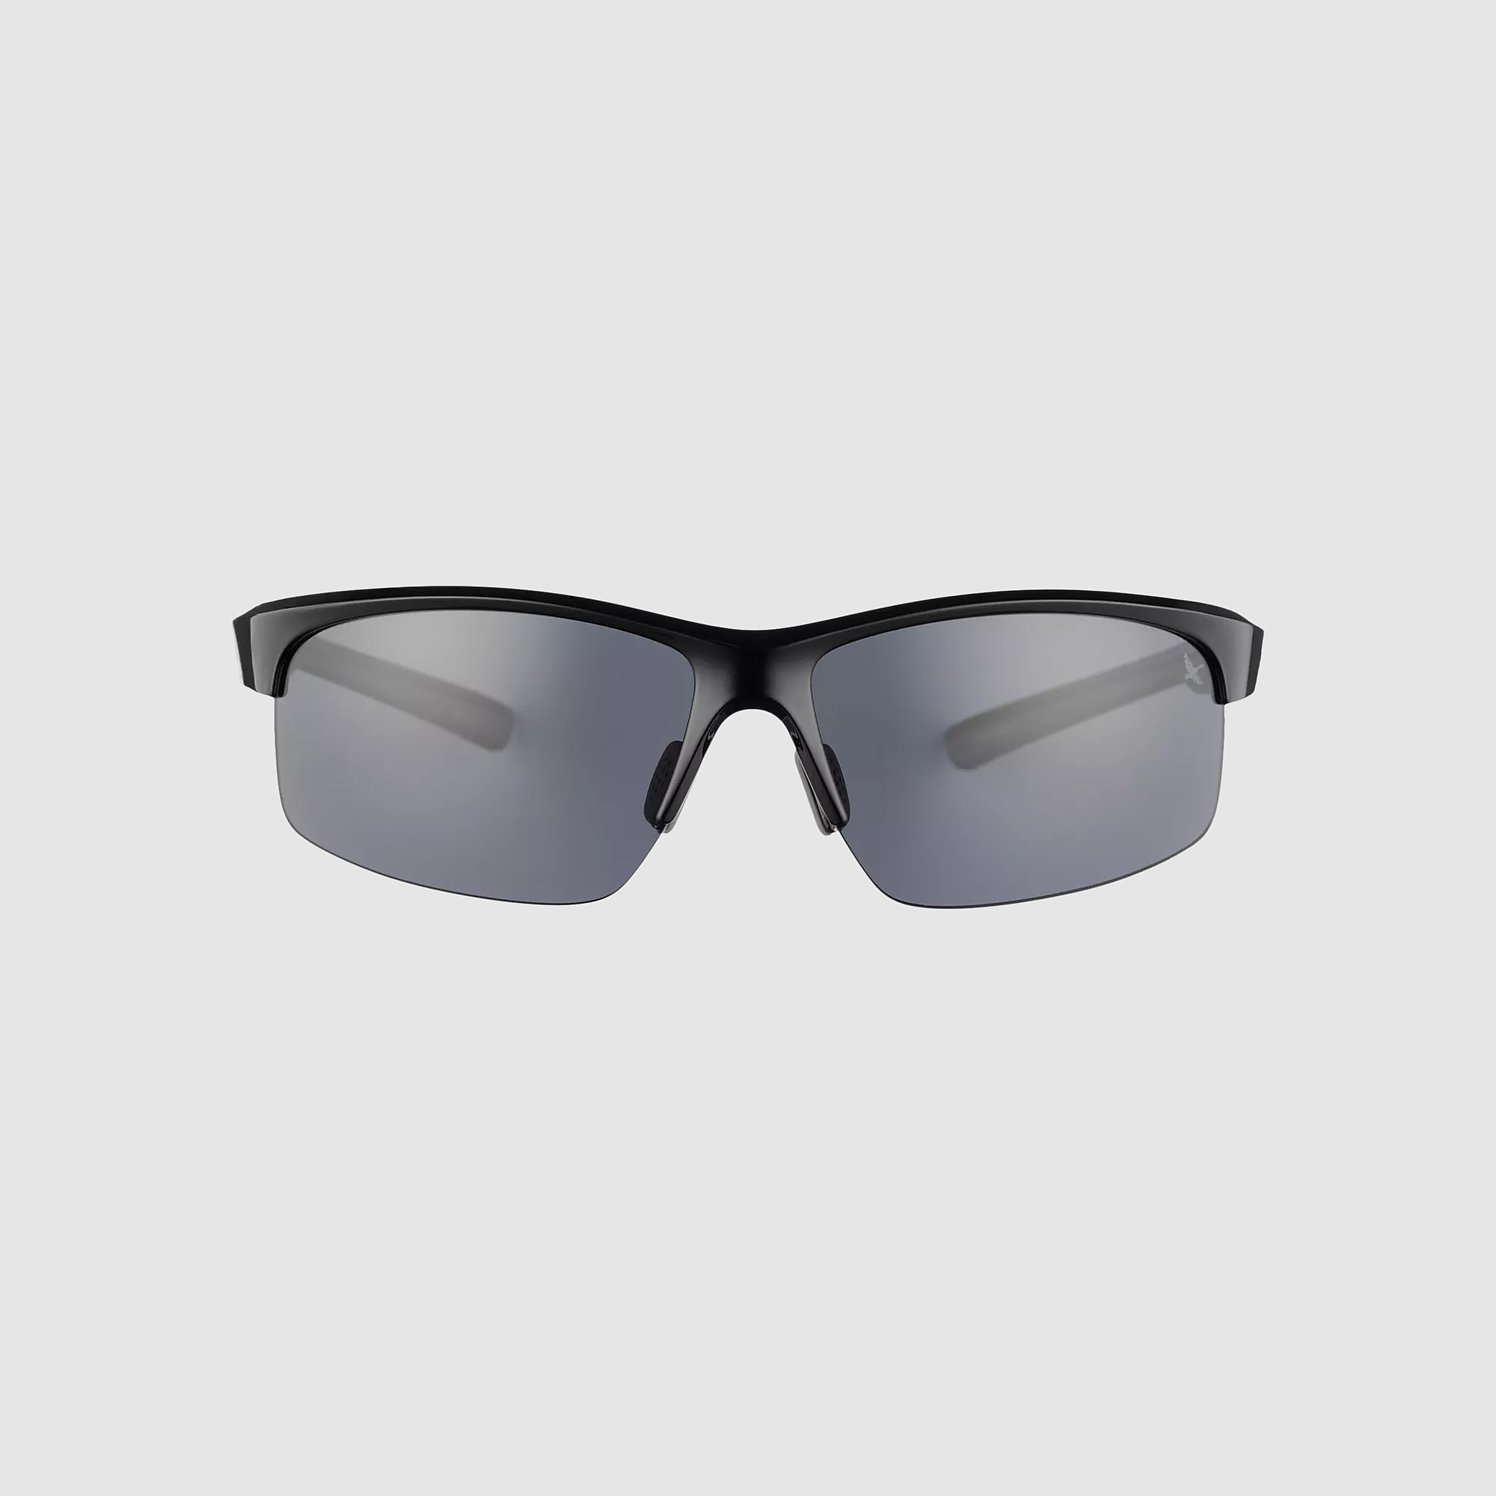 Classic Stylish Square Wayferer Sunglasses Polarized UV Protection Sunglasses for Men | Enrico Eyewear 3012 Black